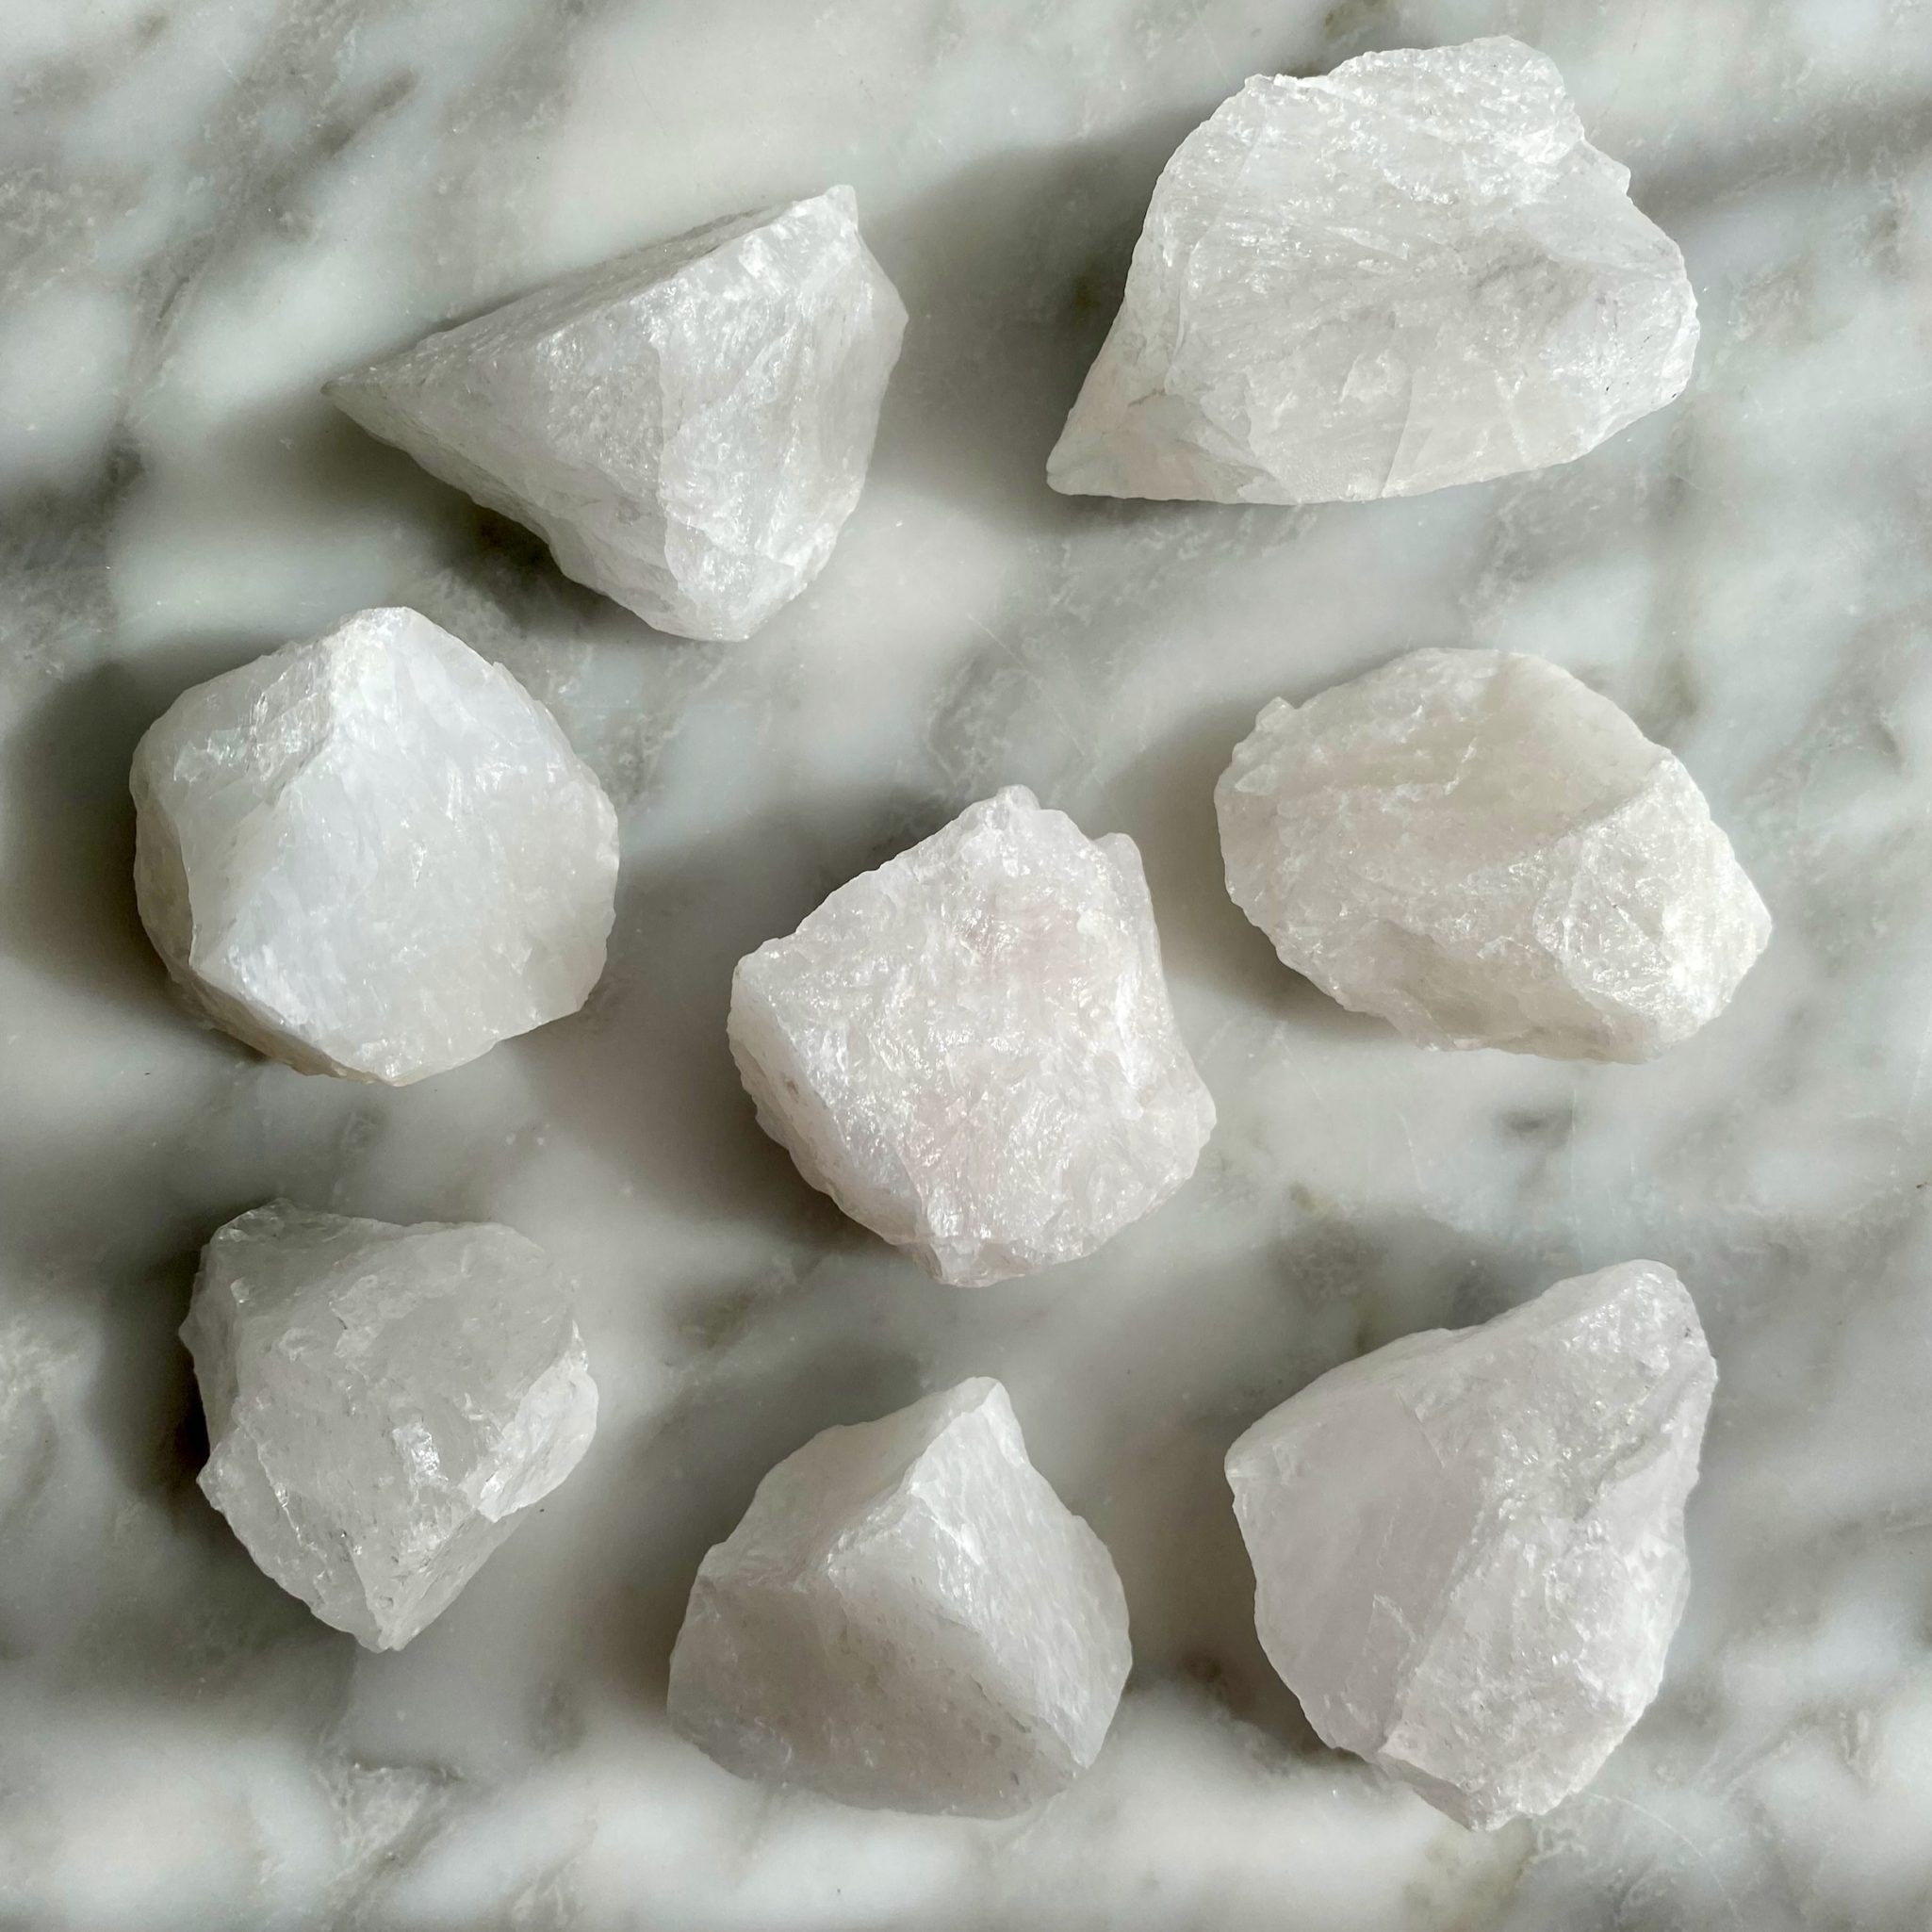 Rough white quartz crystal specimen - Morceau de cristal de quartz blanc brut